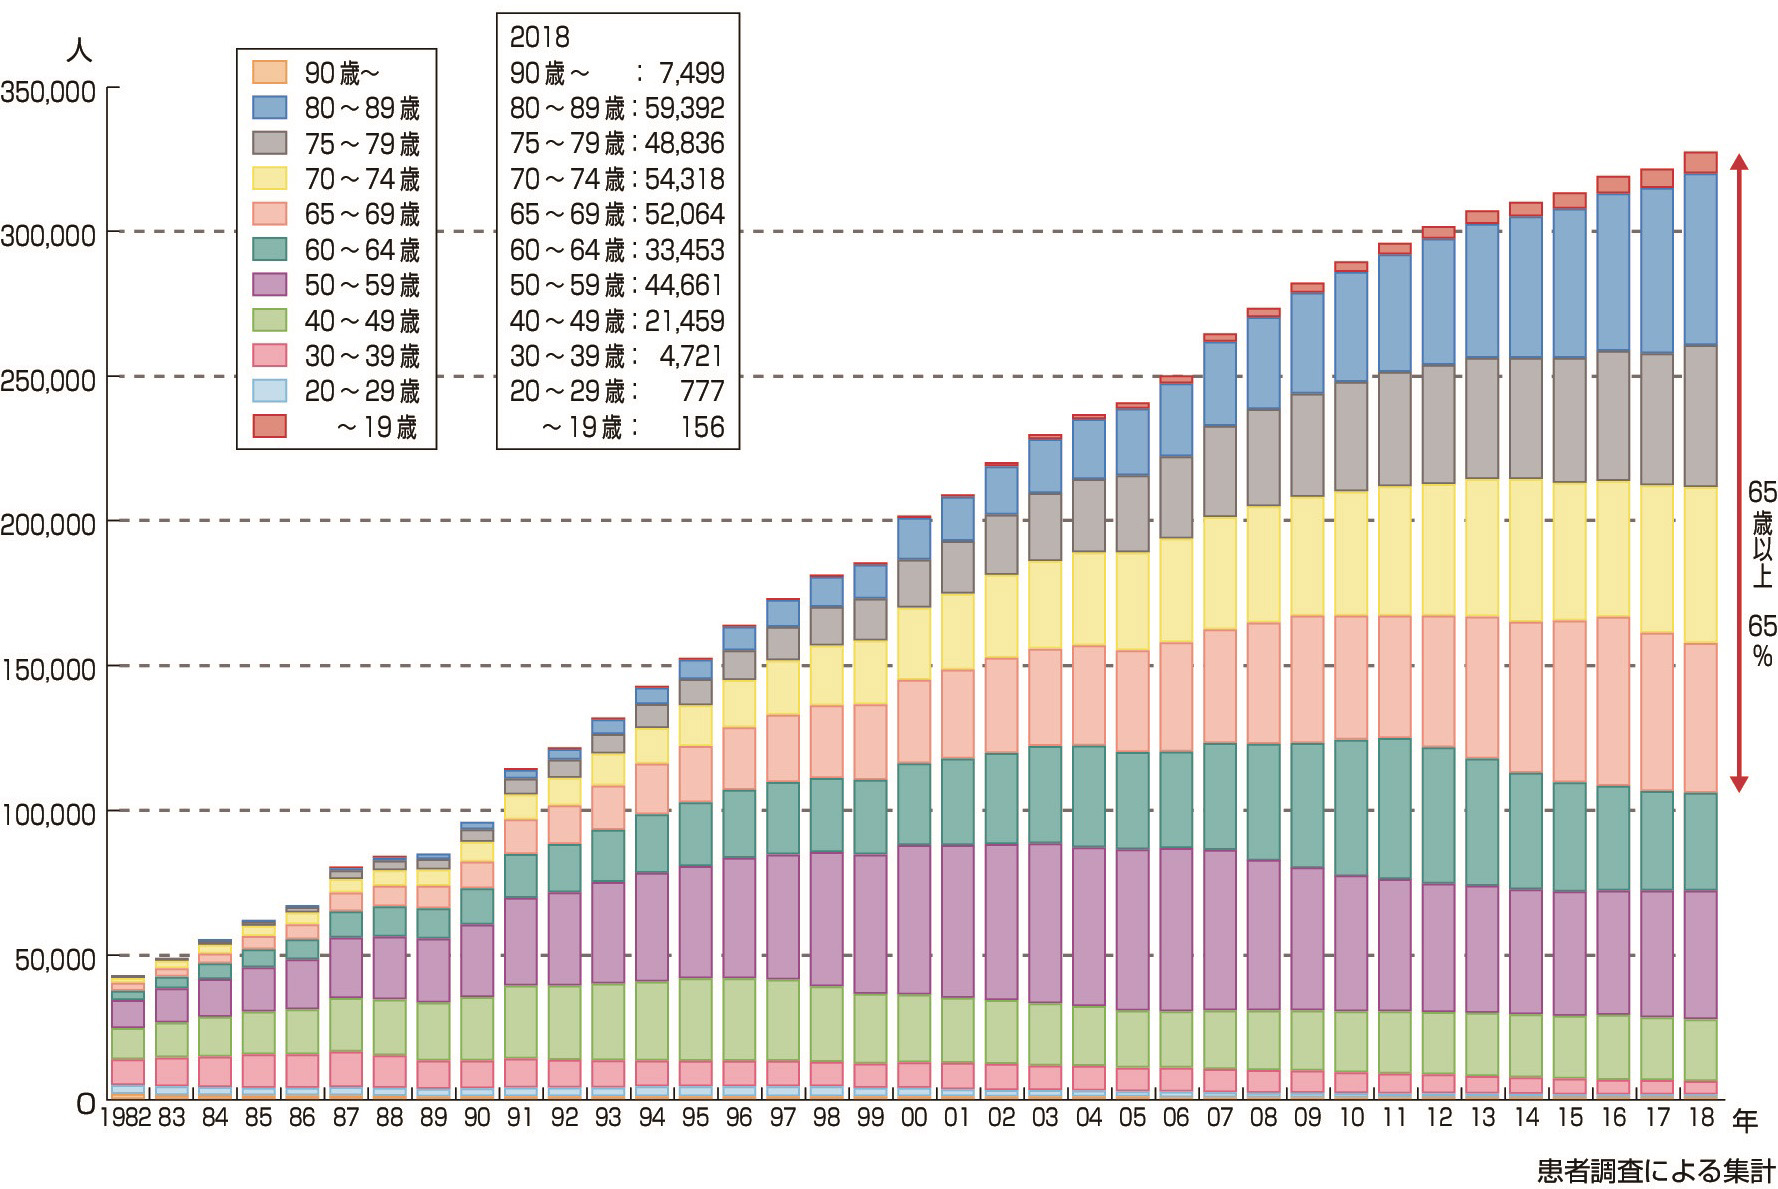 図5　慢性透析患者の年齢分布推移 (一般社団法人日本透析医学会「わが国の慢性透析療法の現況 (2018年12月31日現在) 」)． 